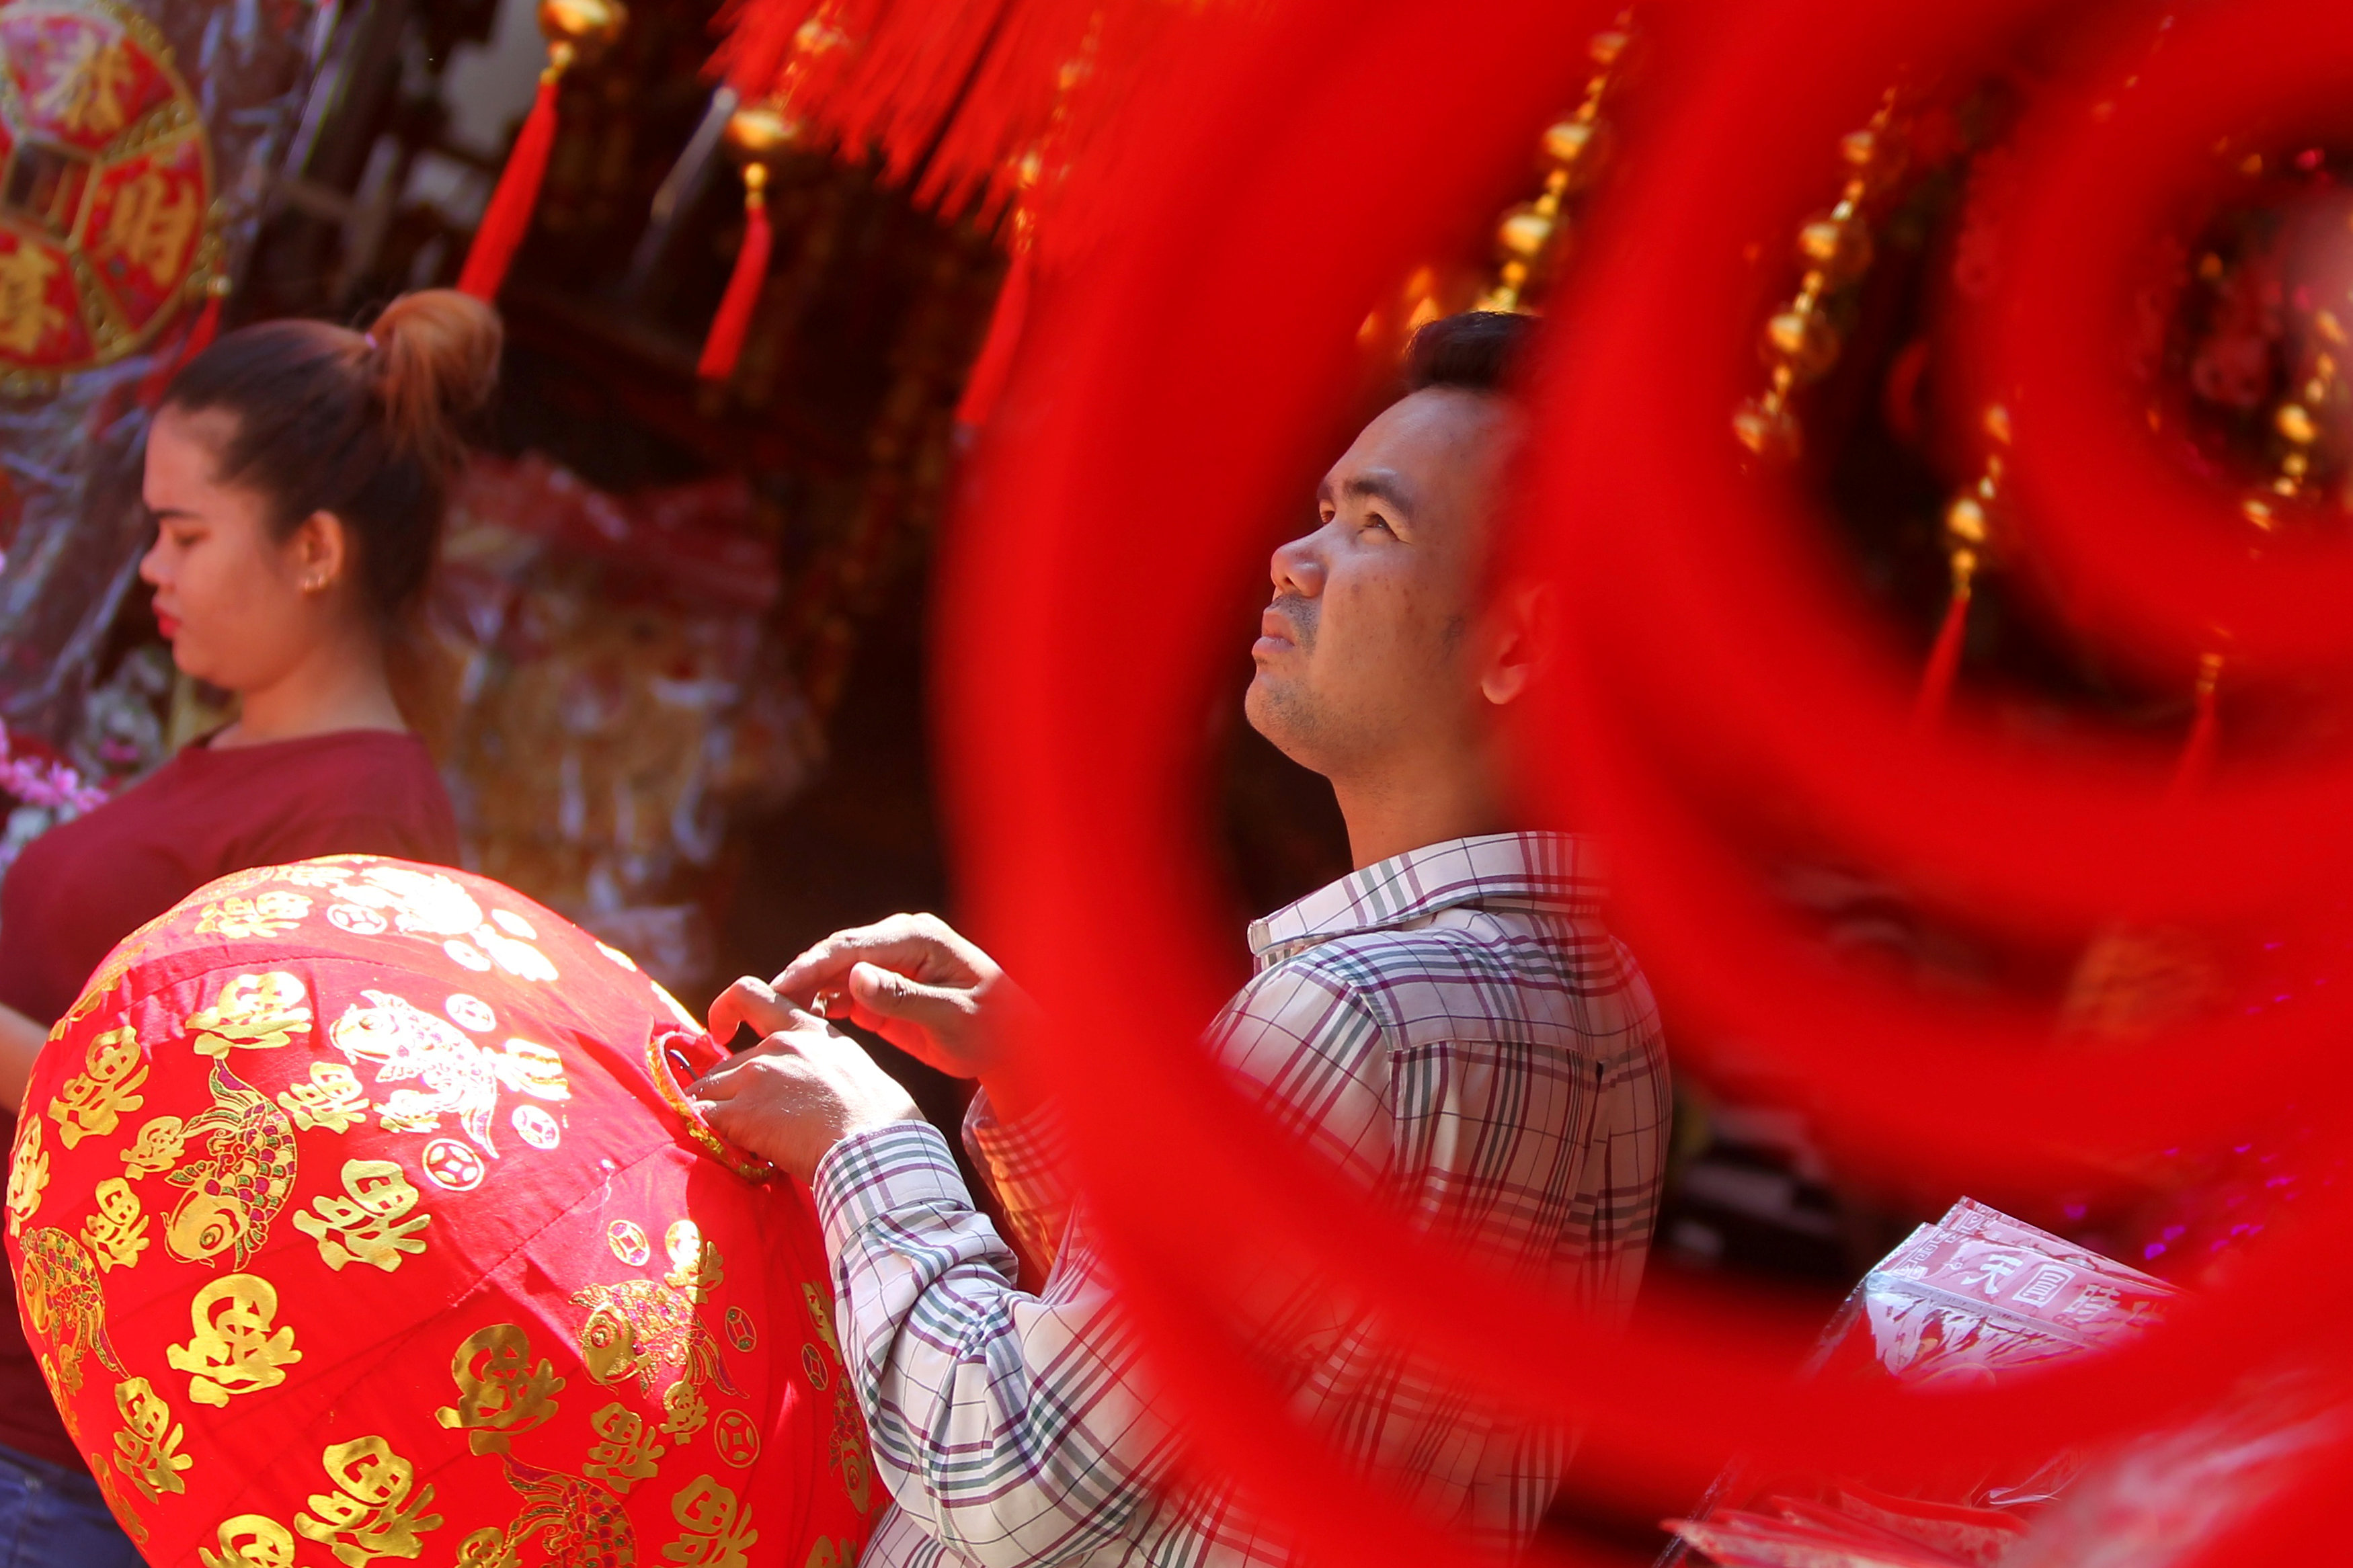 مواطن يشترى الفوانيس المضاءة للاحتفال بالسنة الصينية الجديدة فى كمبوديا